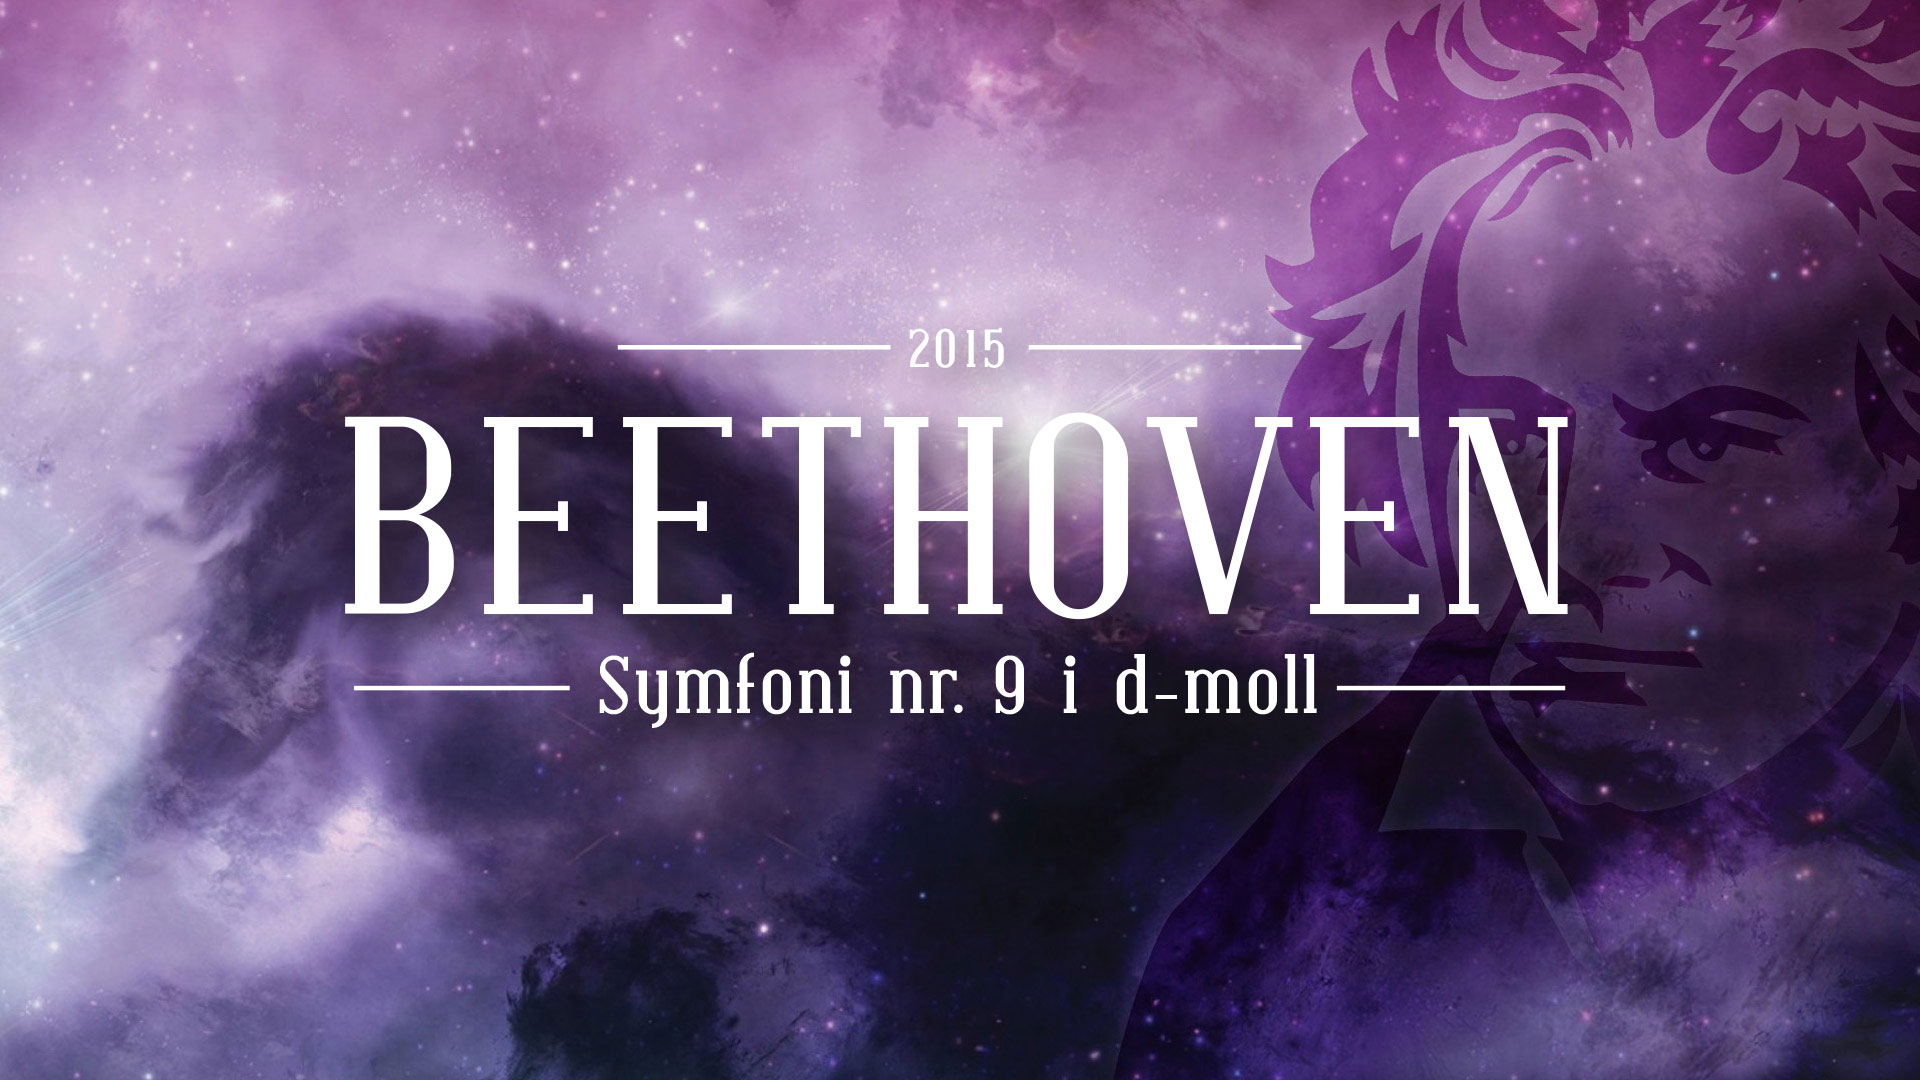 Omslagsbilete for Beethovens 9. symfoni